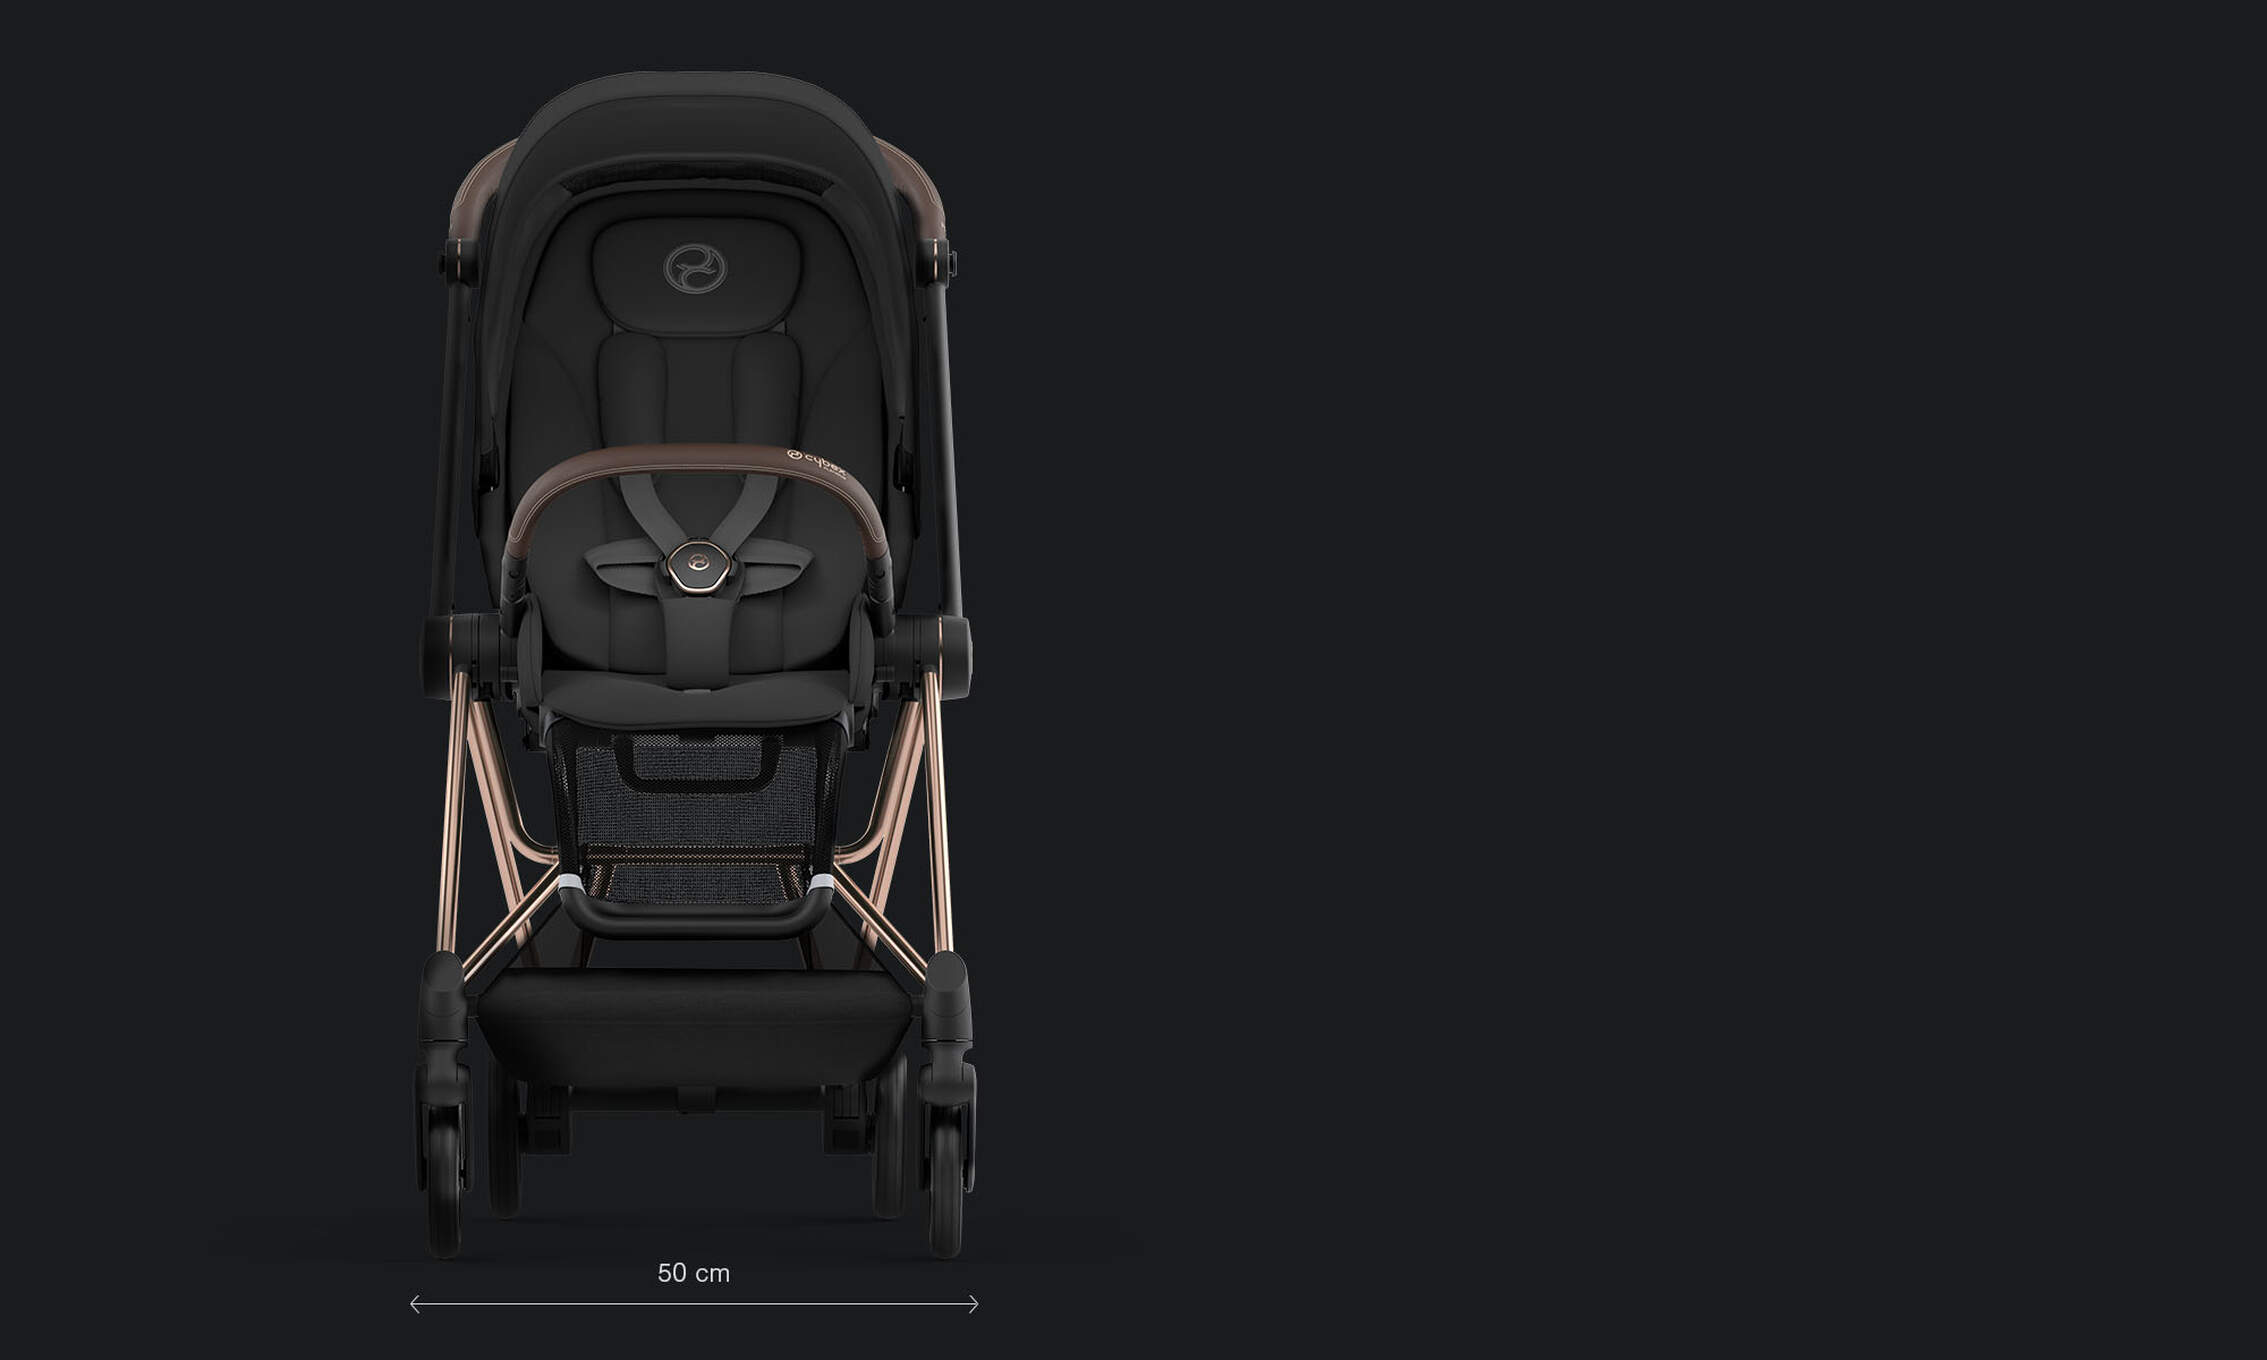 CYBEX Platinum Mios barnvagn lätt och kompakt funktionalitet